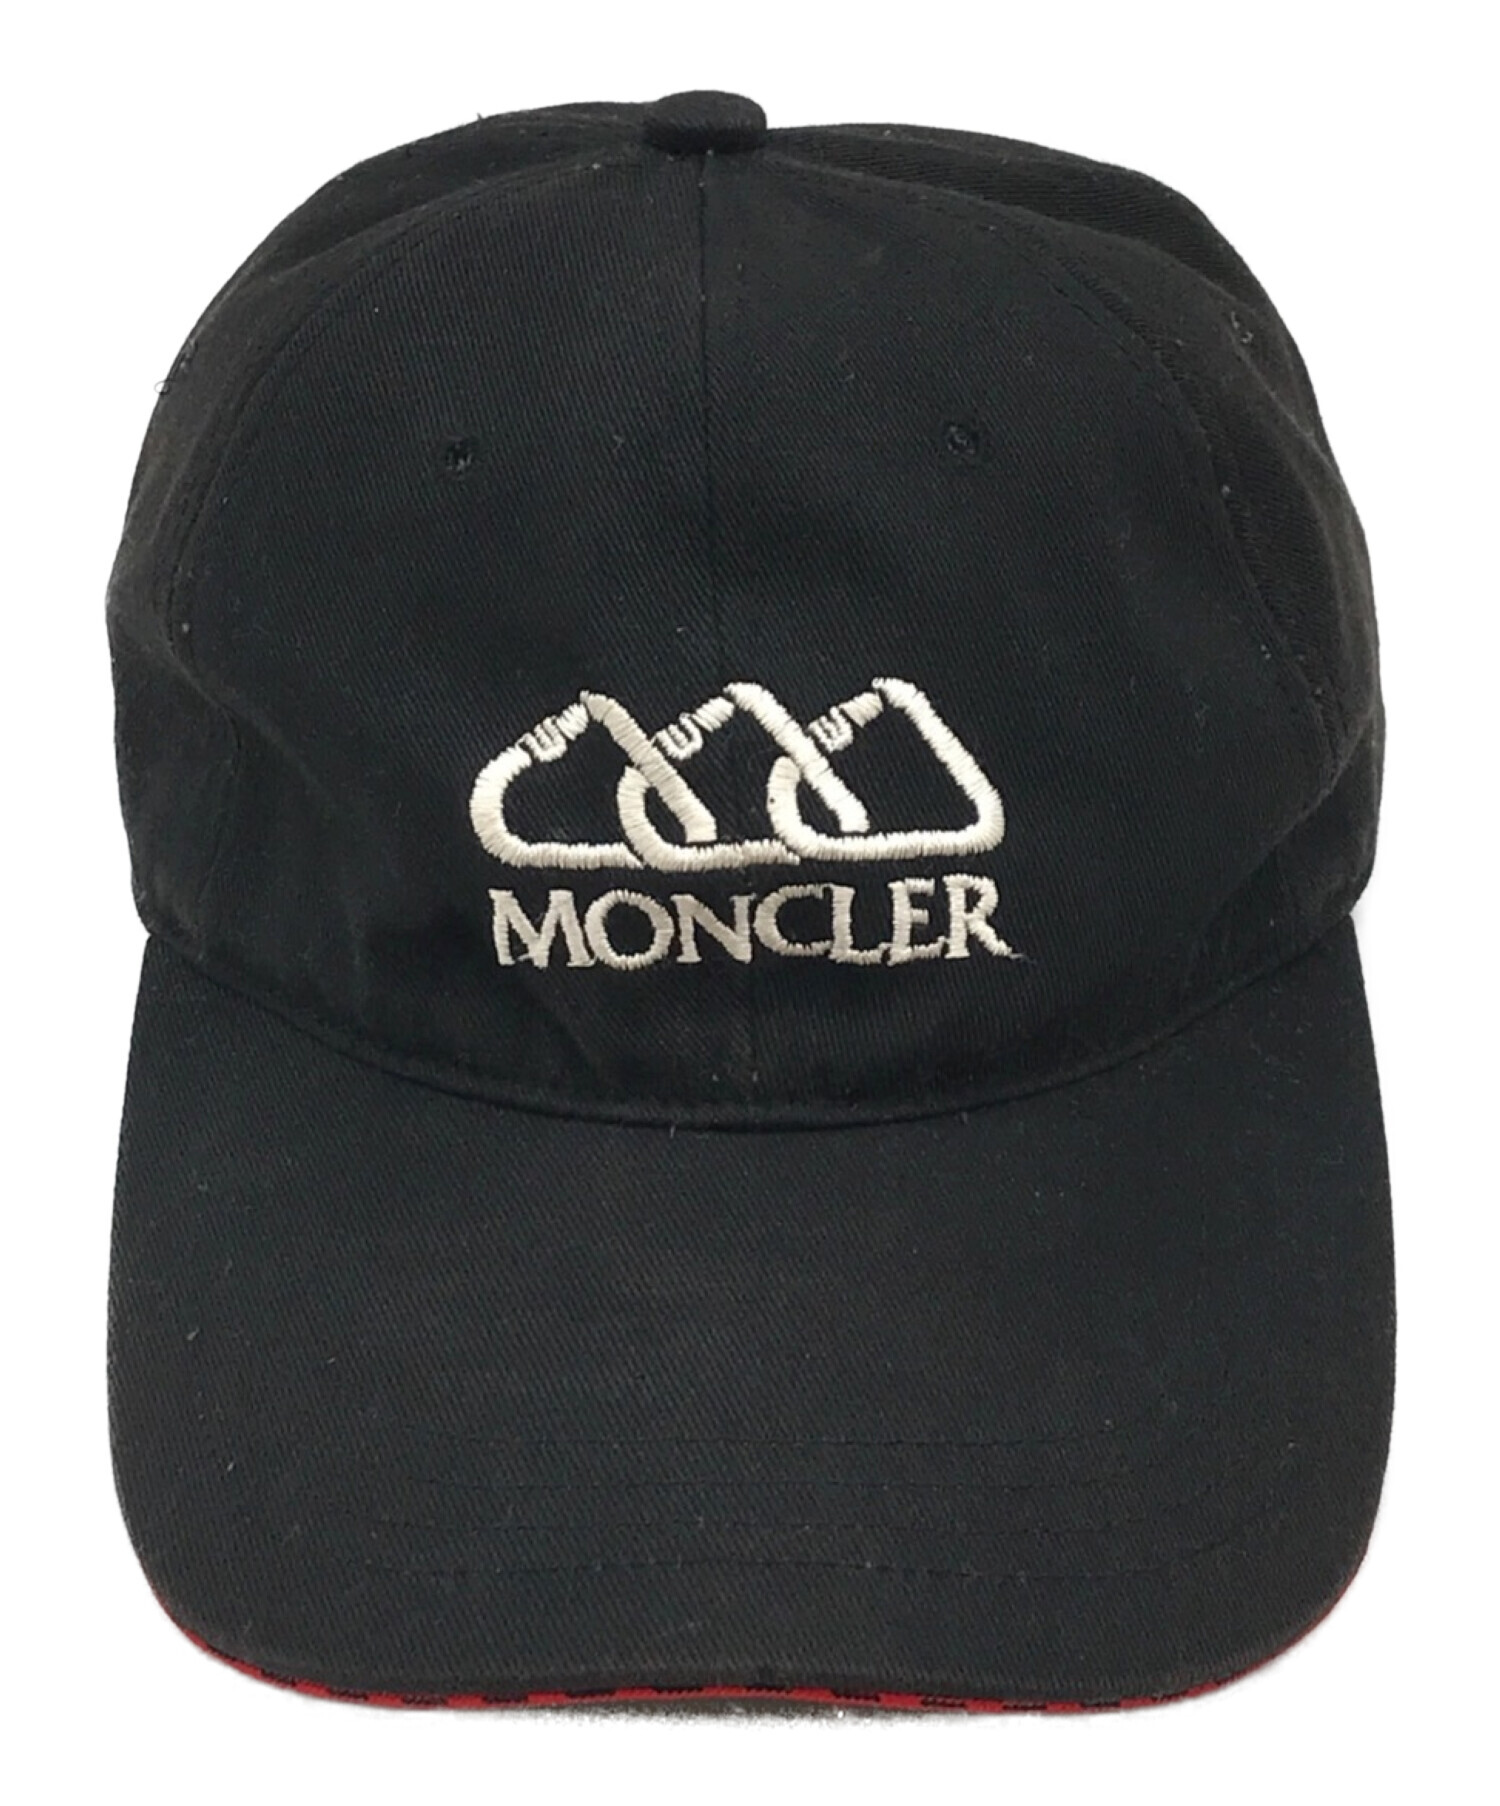 MONCLER (モンクレール) berretto baseball cap ブラック サイズ:下記参照